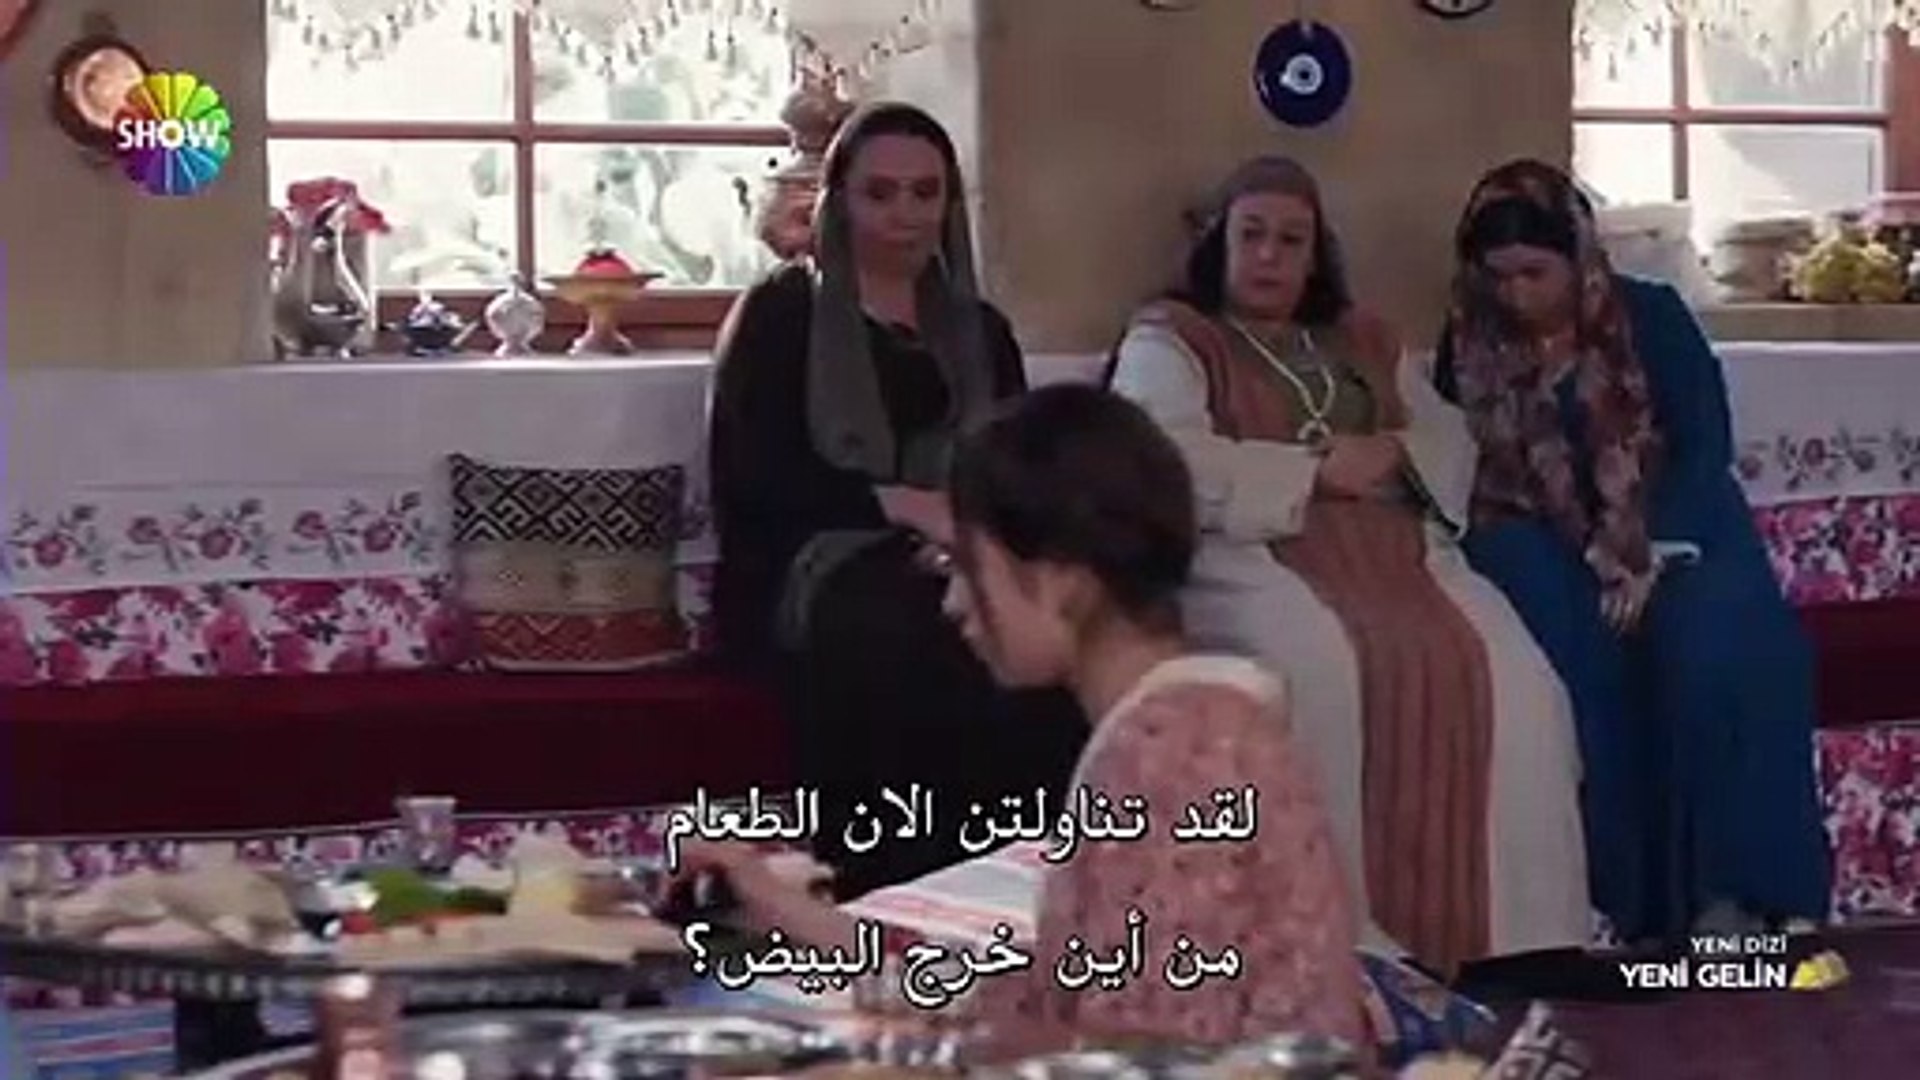 مسلسل العروس الجديدة الحلقة 1 القسم 2 مترجم للعربية - فيديو Dailymotion